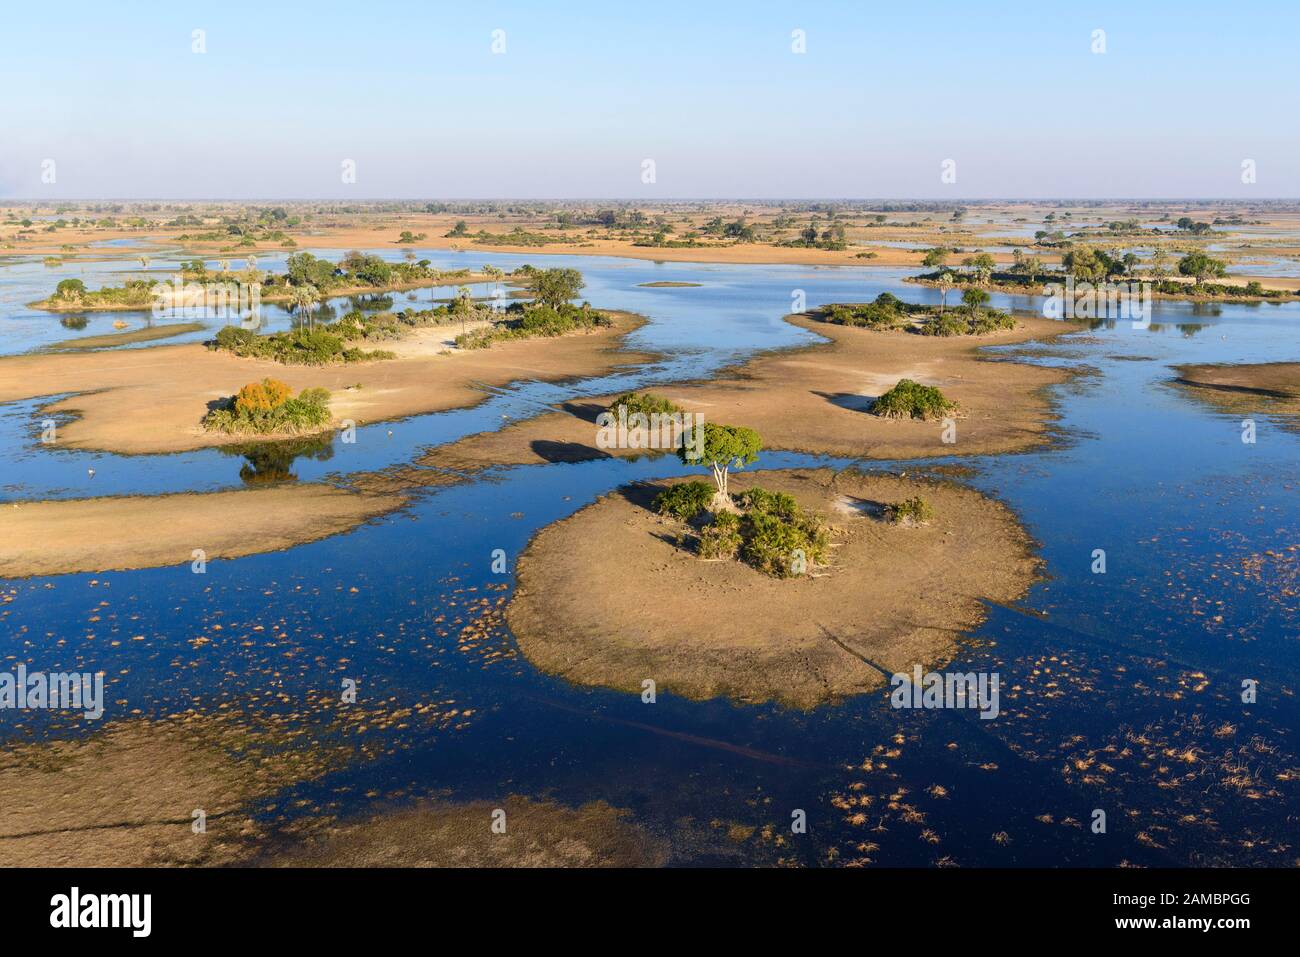 Veduta aerea del Delta dell'Okavango all'inizio dell'alluvione annuale, Botswana Foto Stock